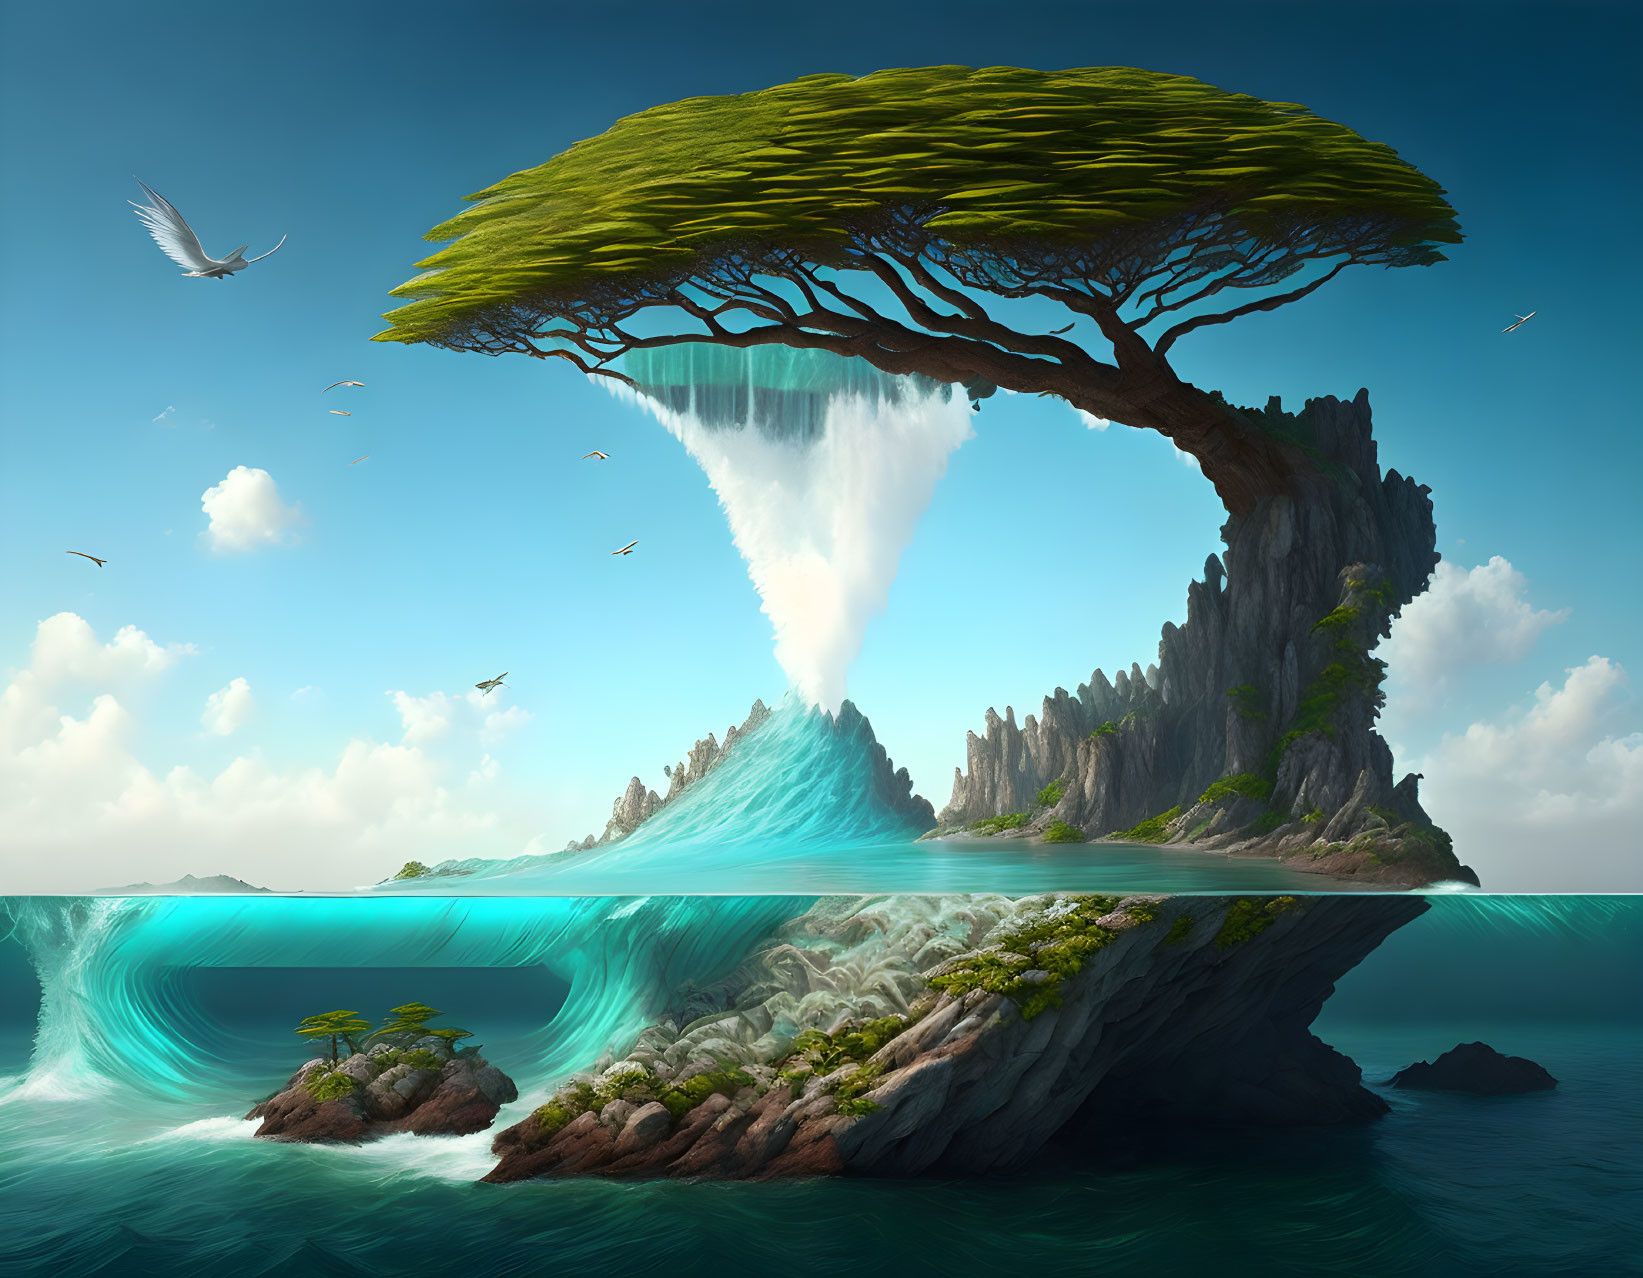 Sea tree